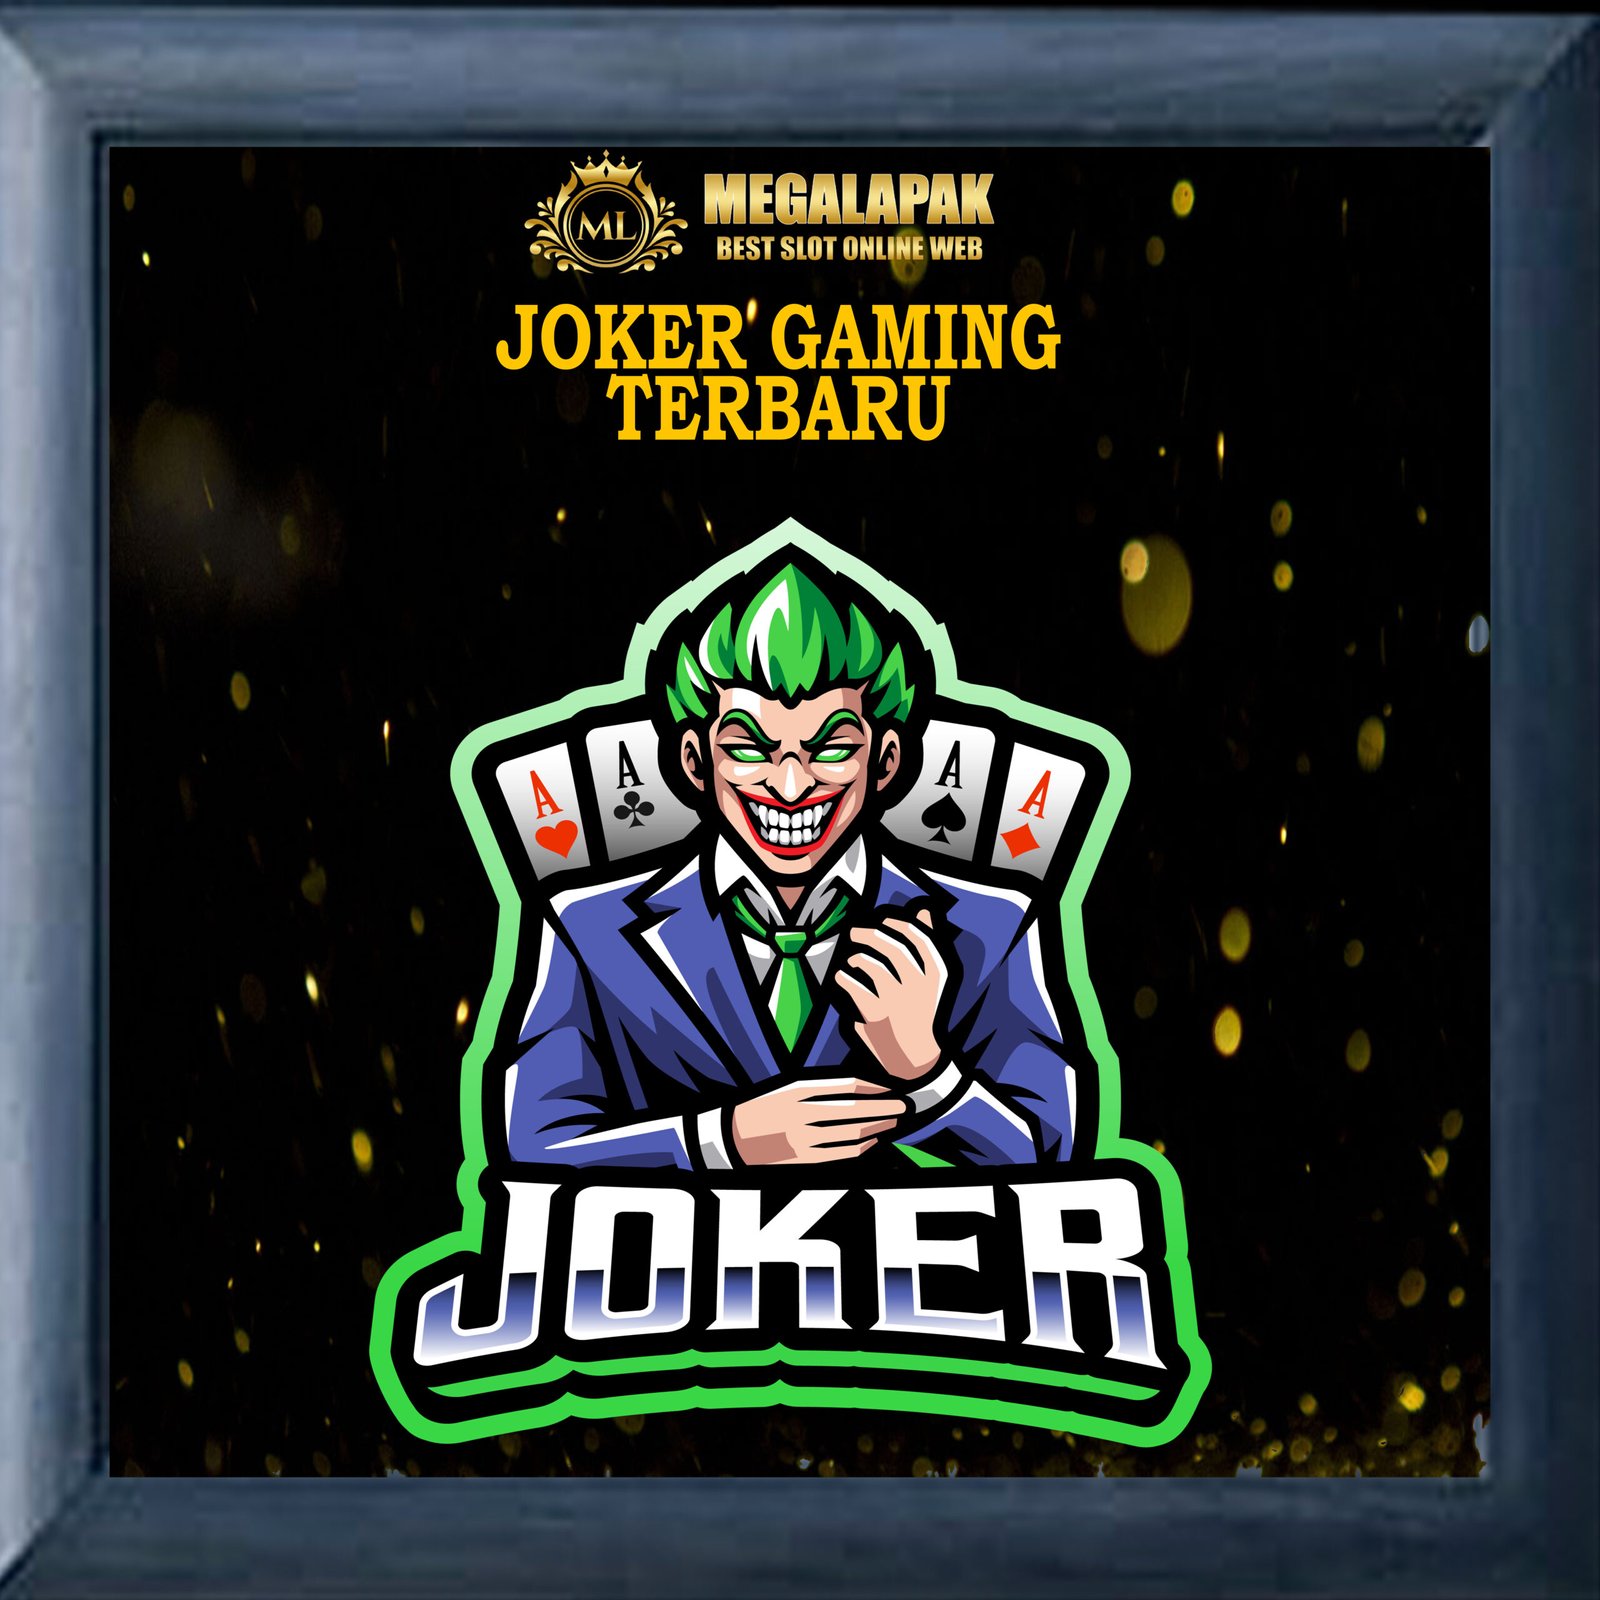 Joker Gaming Terbaru Megalapak